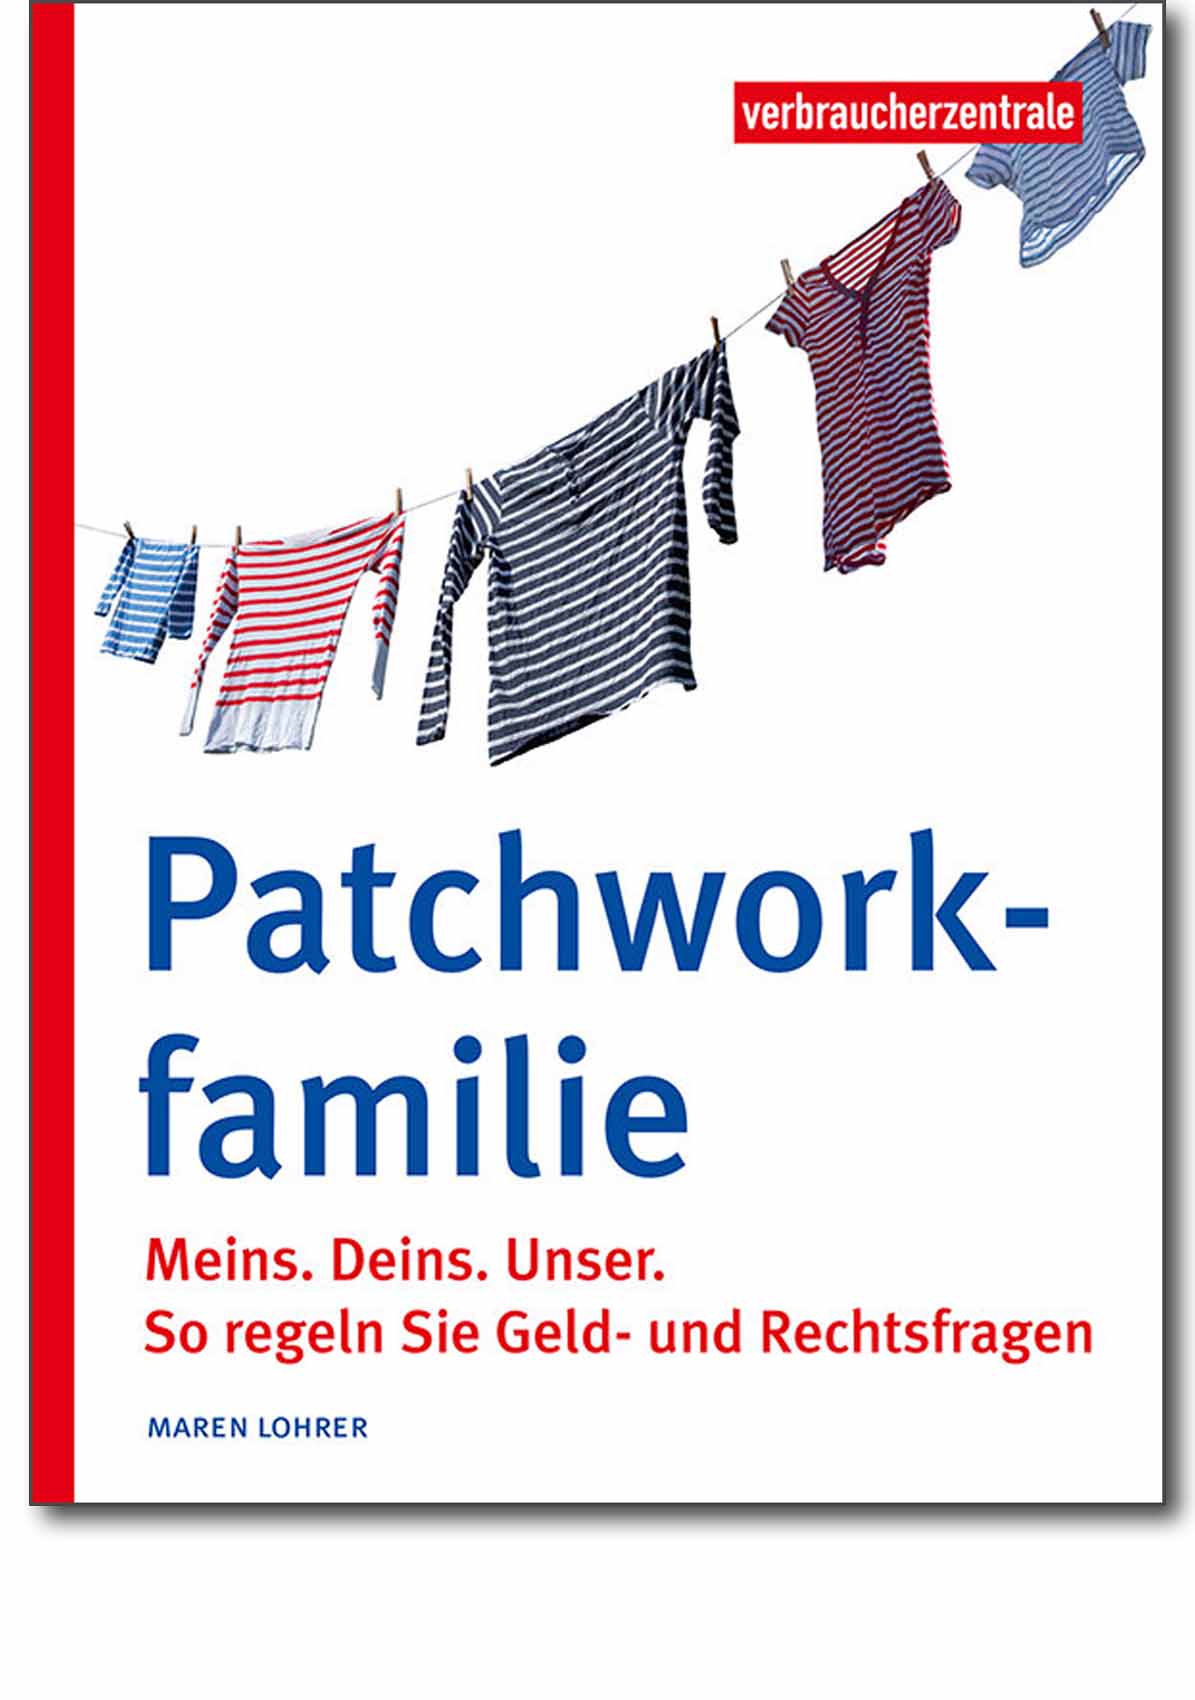 Buch - Patchworkfamilie - Verbraucherzentrale